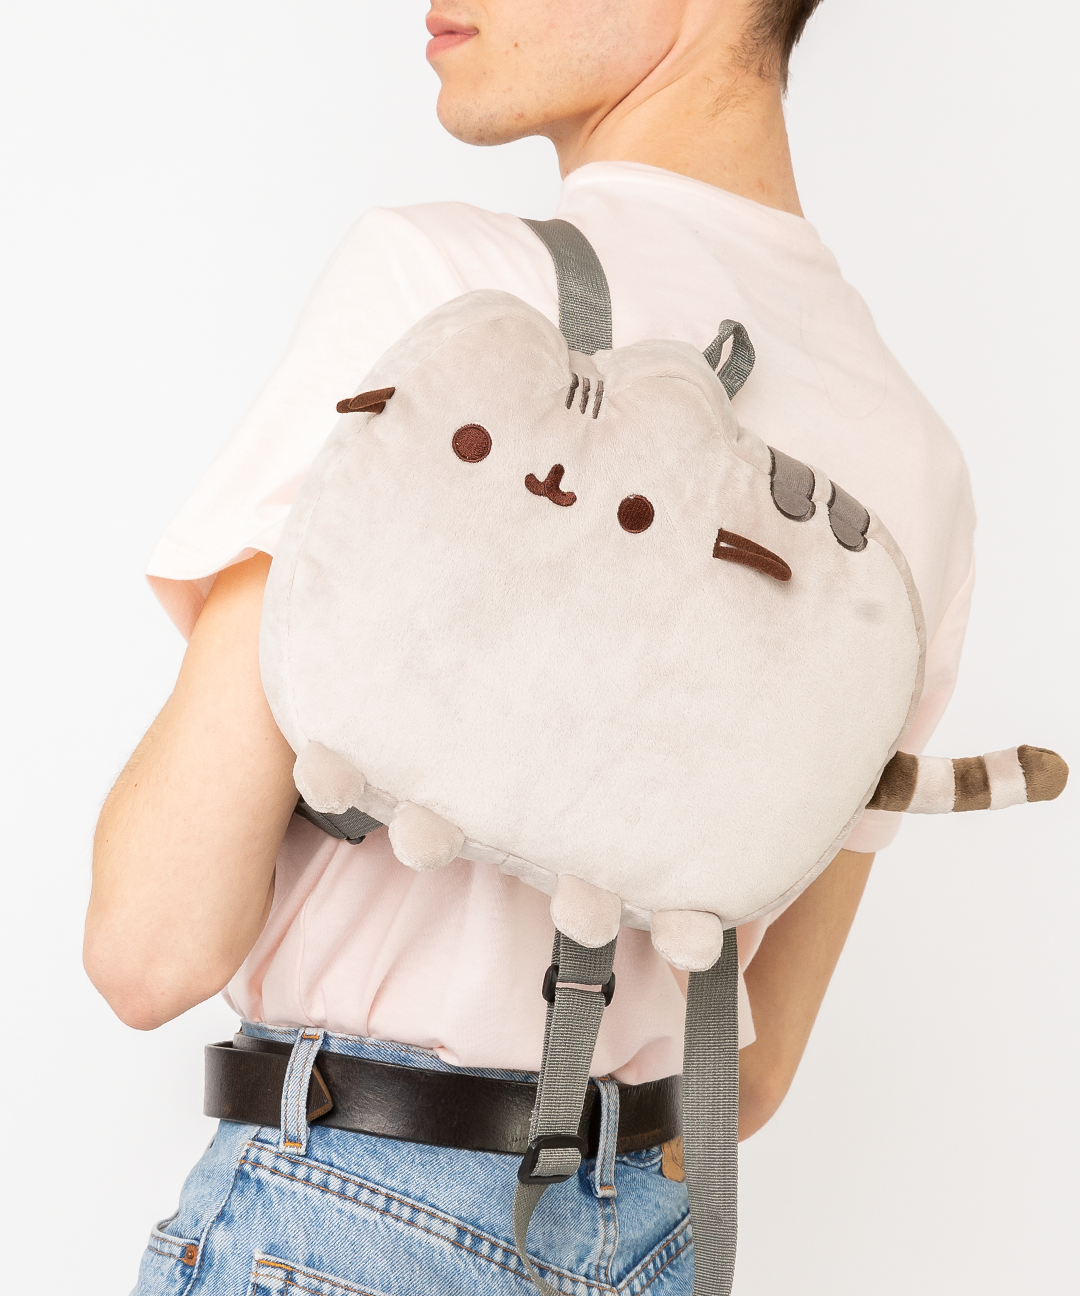 stuffed animal backpack